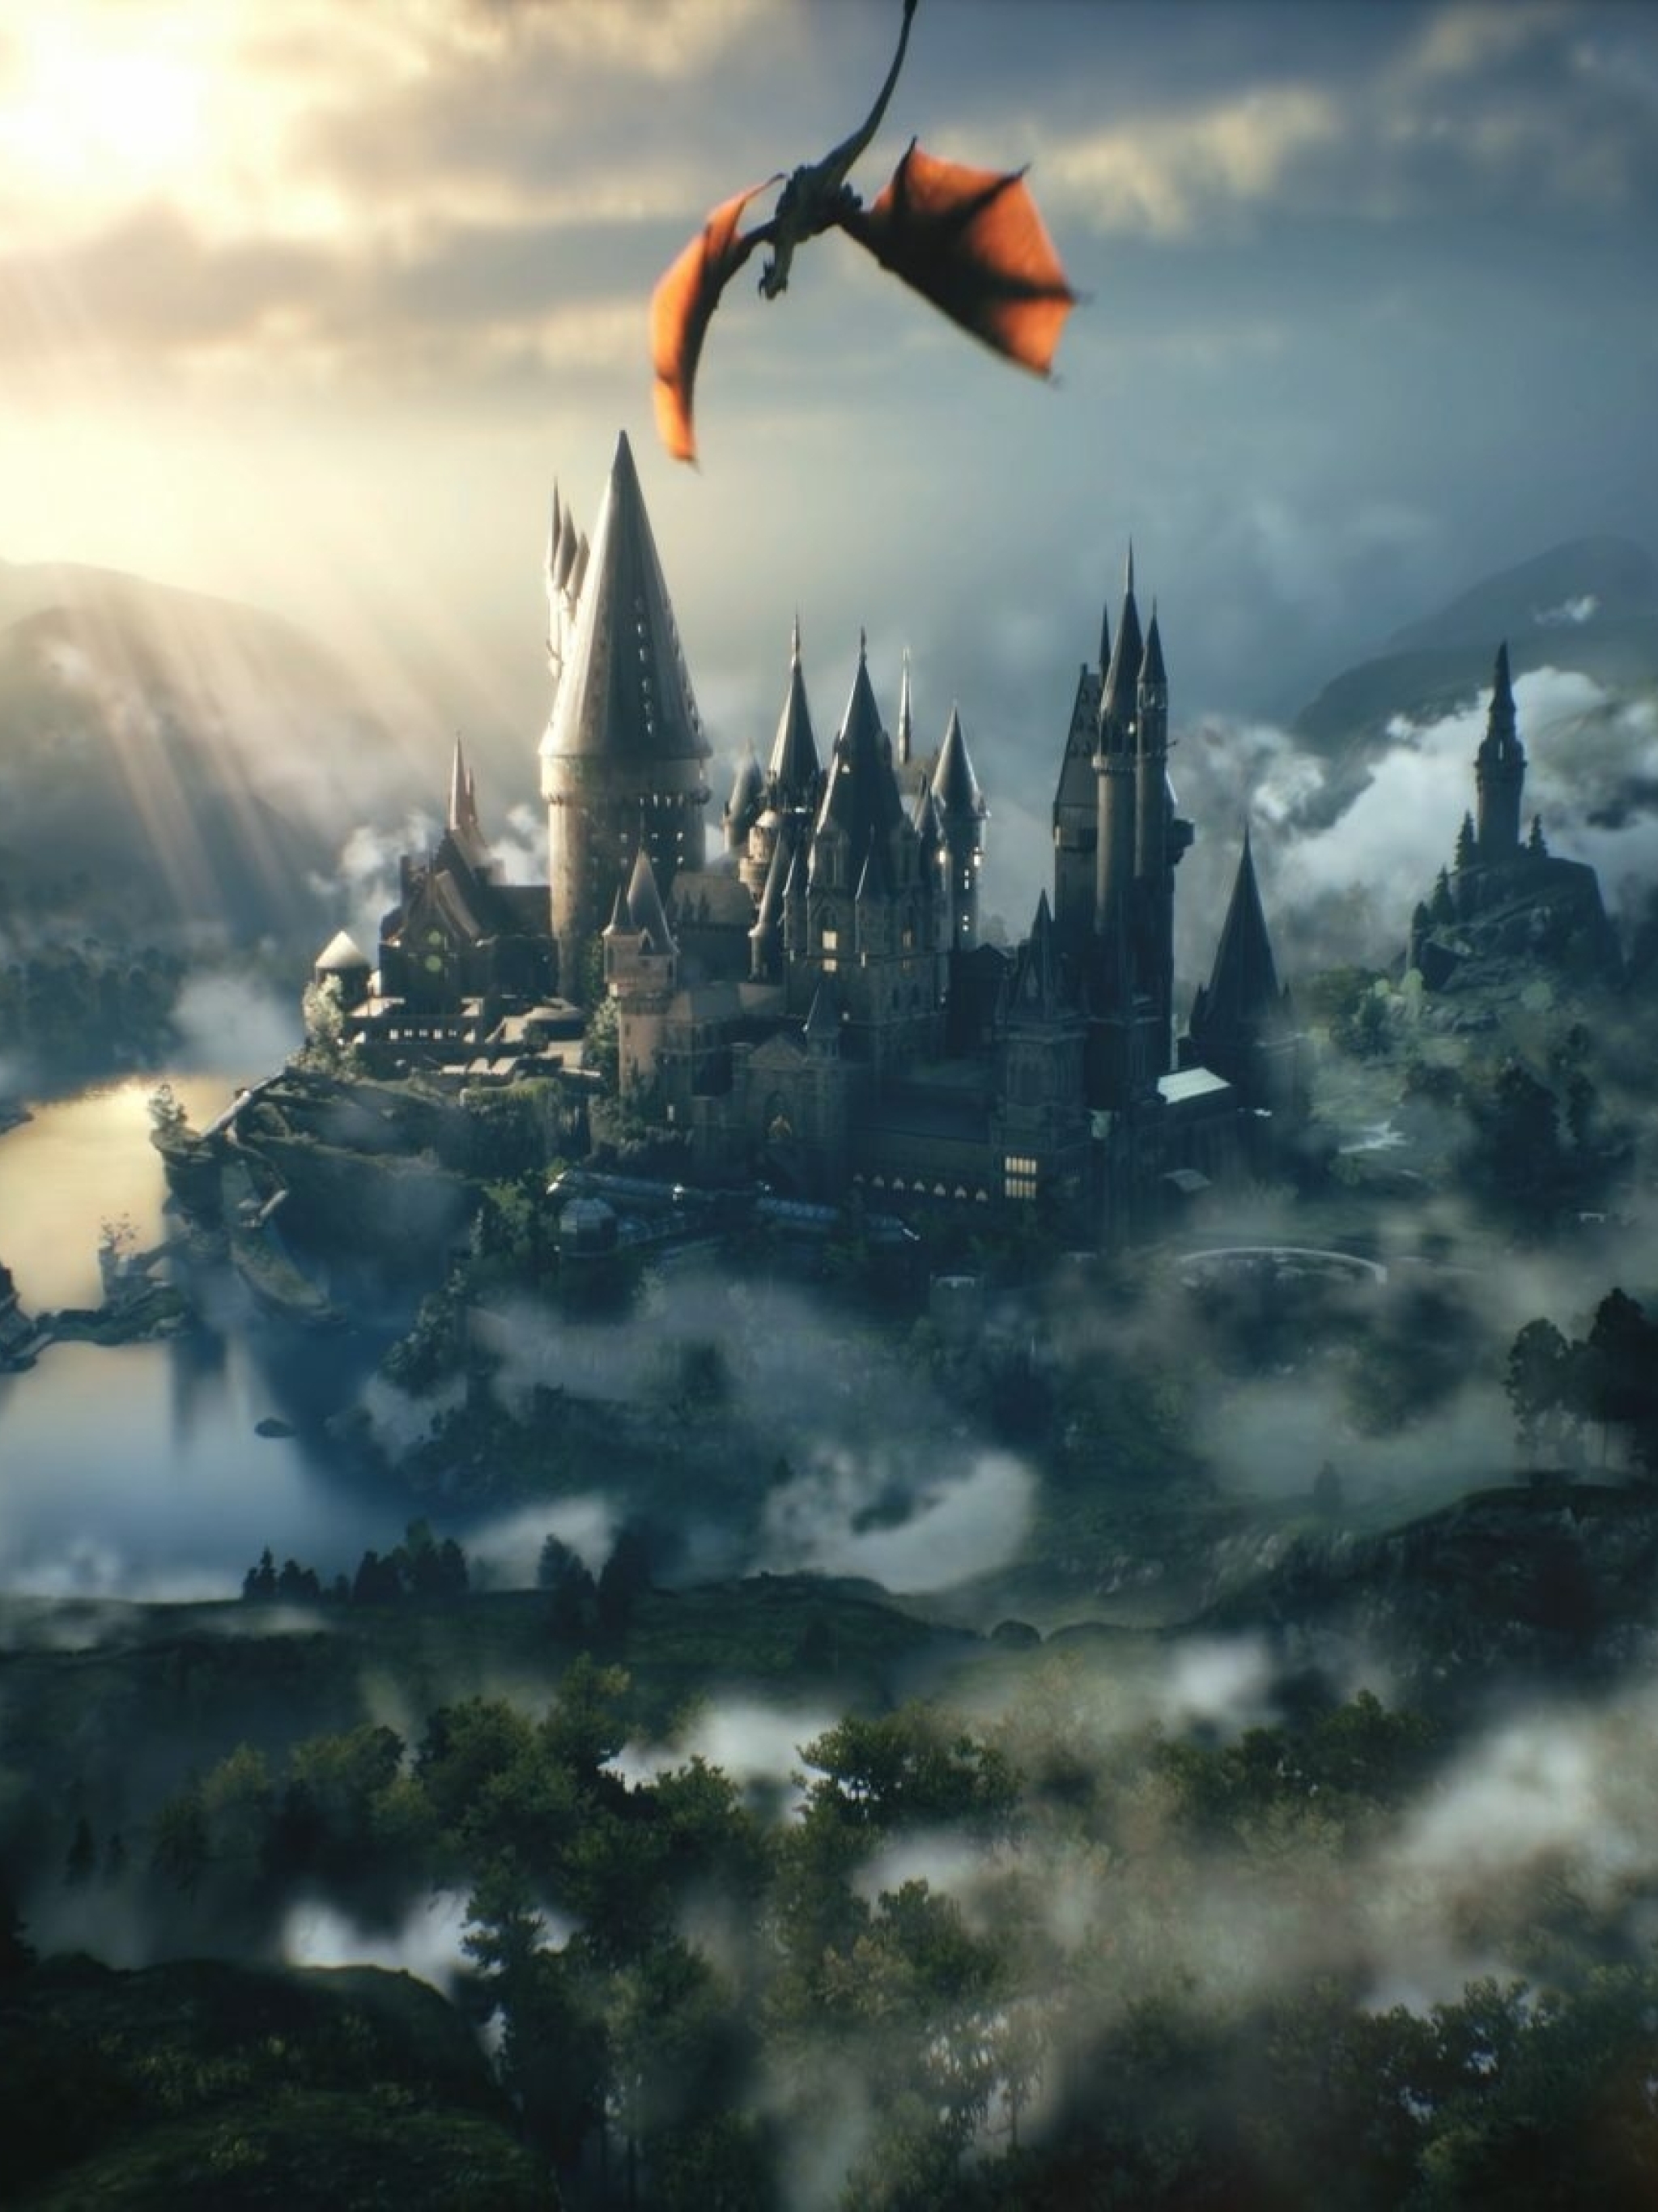 Top 35 Best Harry Potter iPhone Wallpapers  Gettywallpapers